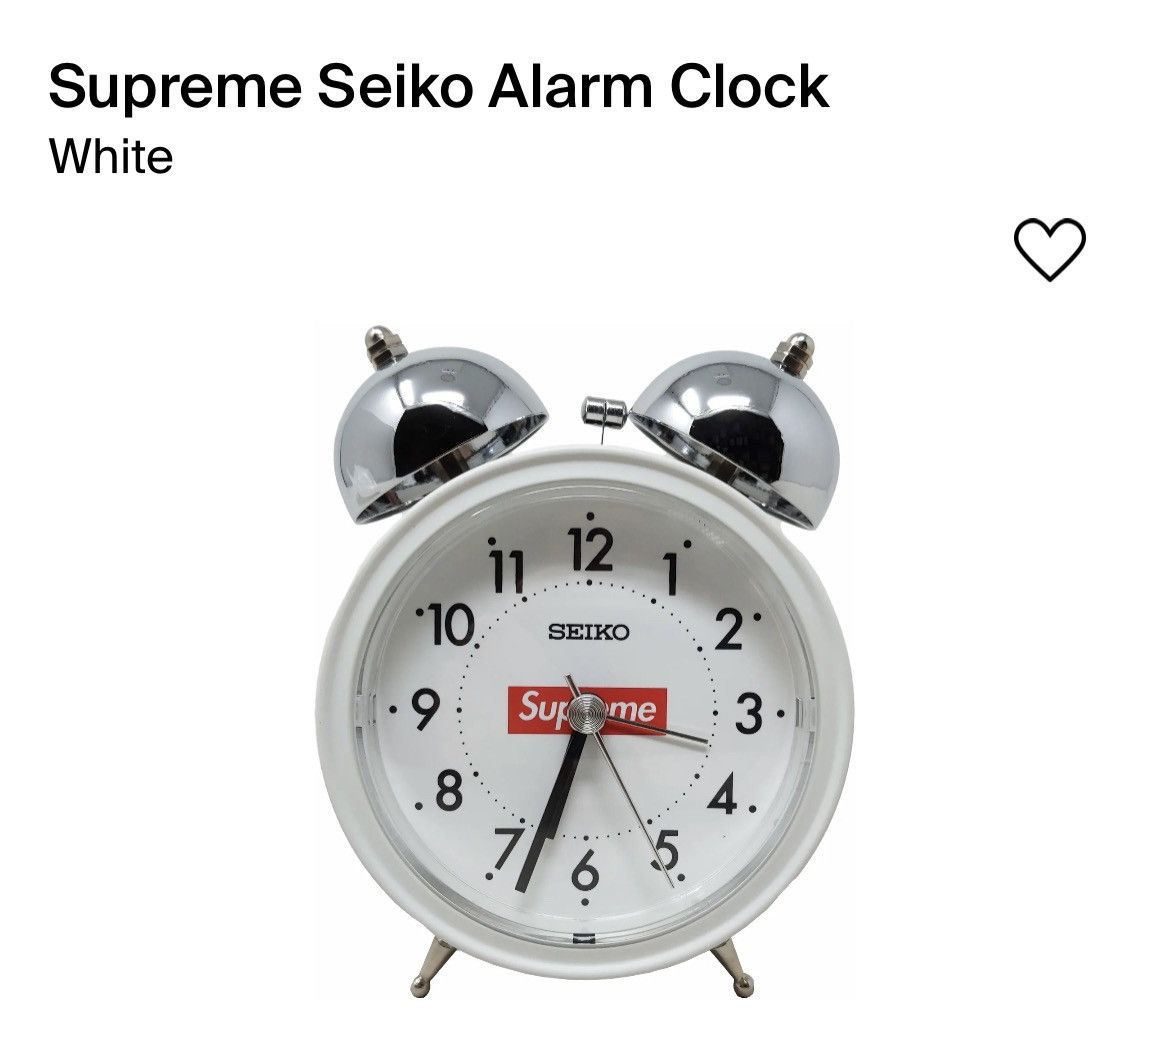 Supreme Supreme x Seiko alarm clock | Grailed